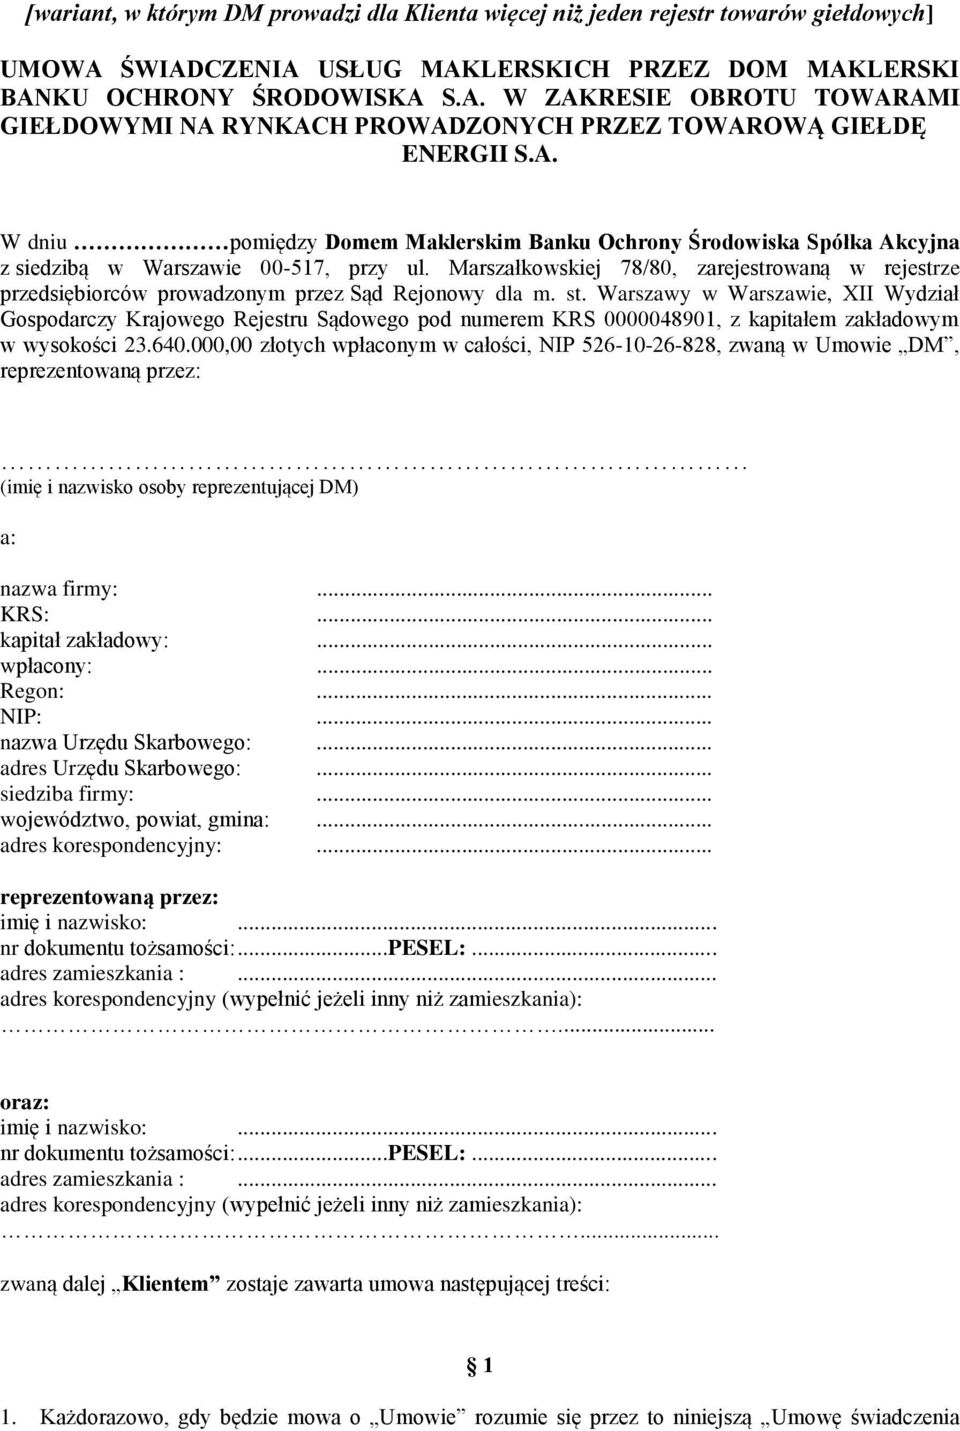 Marszałkowskiej 78/80, zarejestrowaną w rejestrze przedsiębiorców prowadzonym przez Sąd Rejonowy dla m. st.